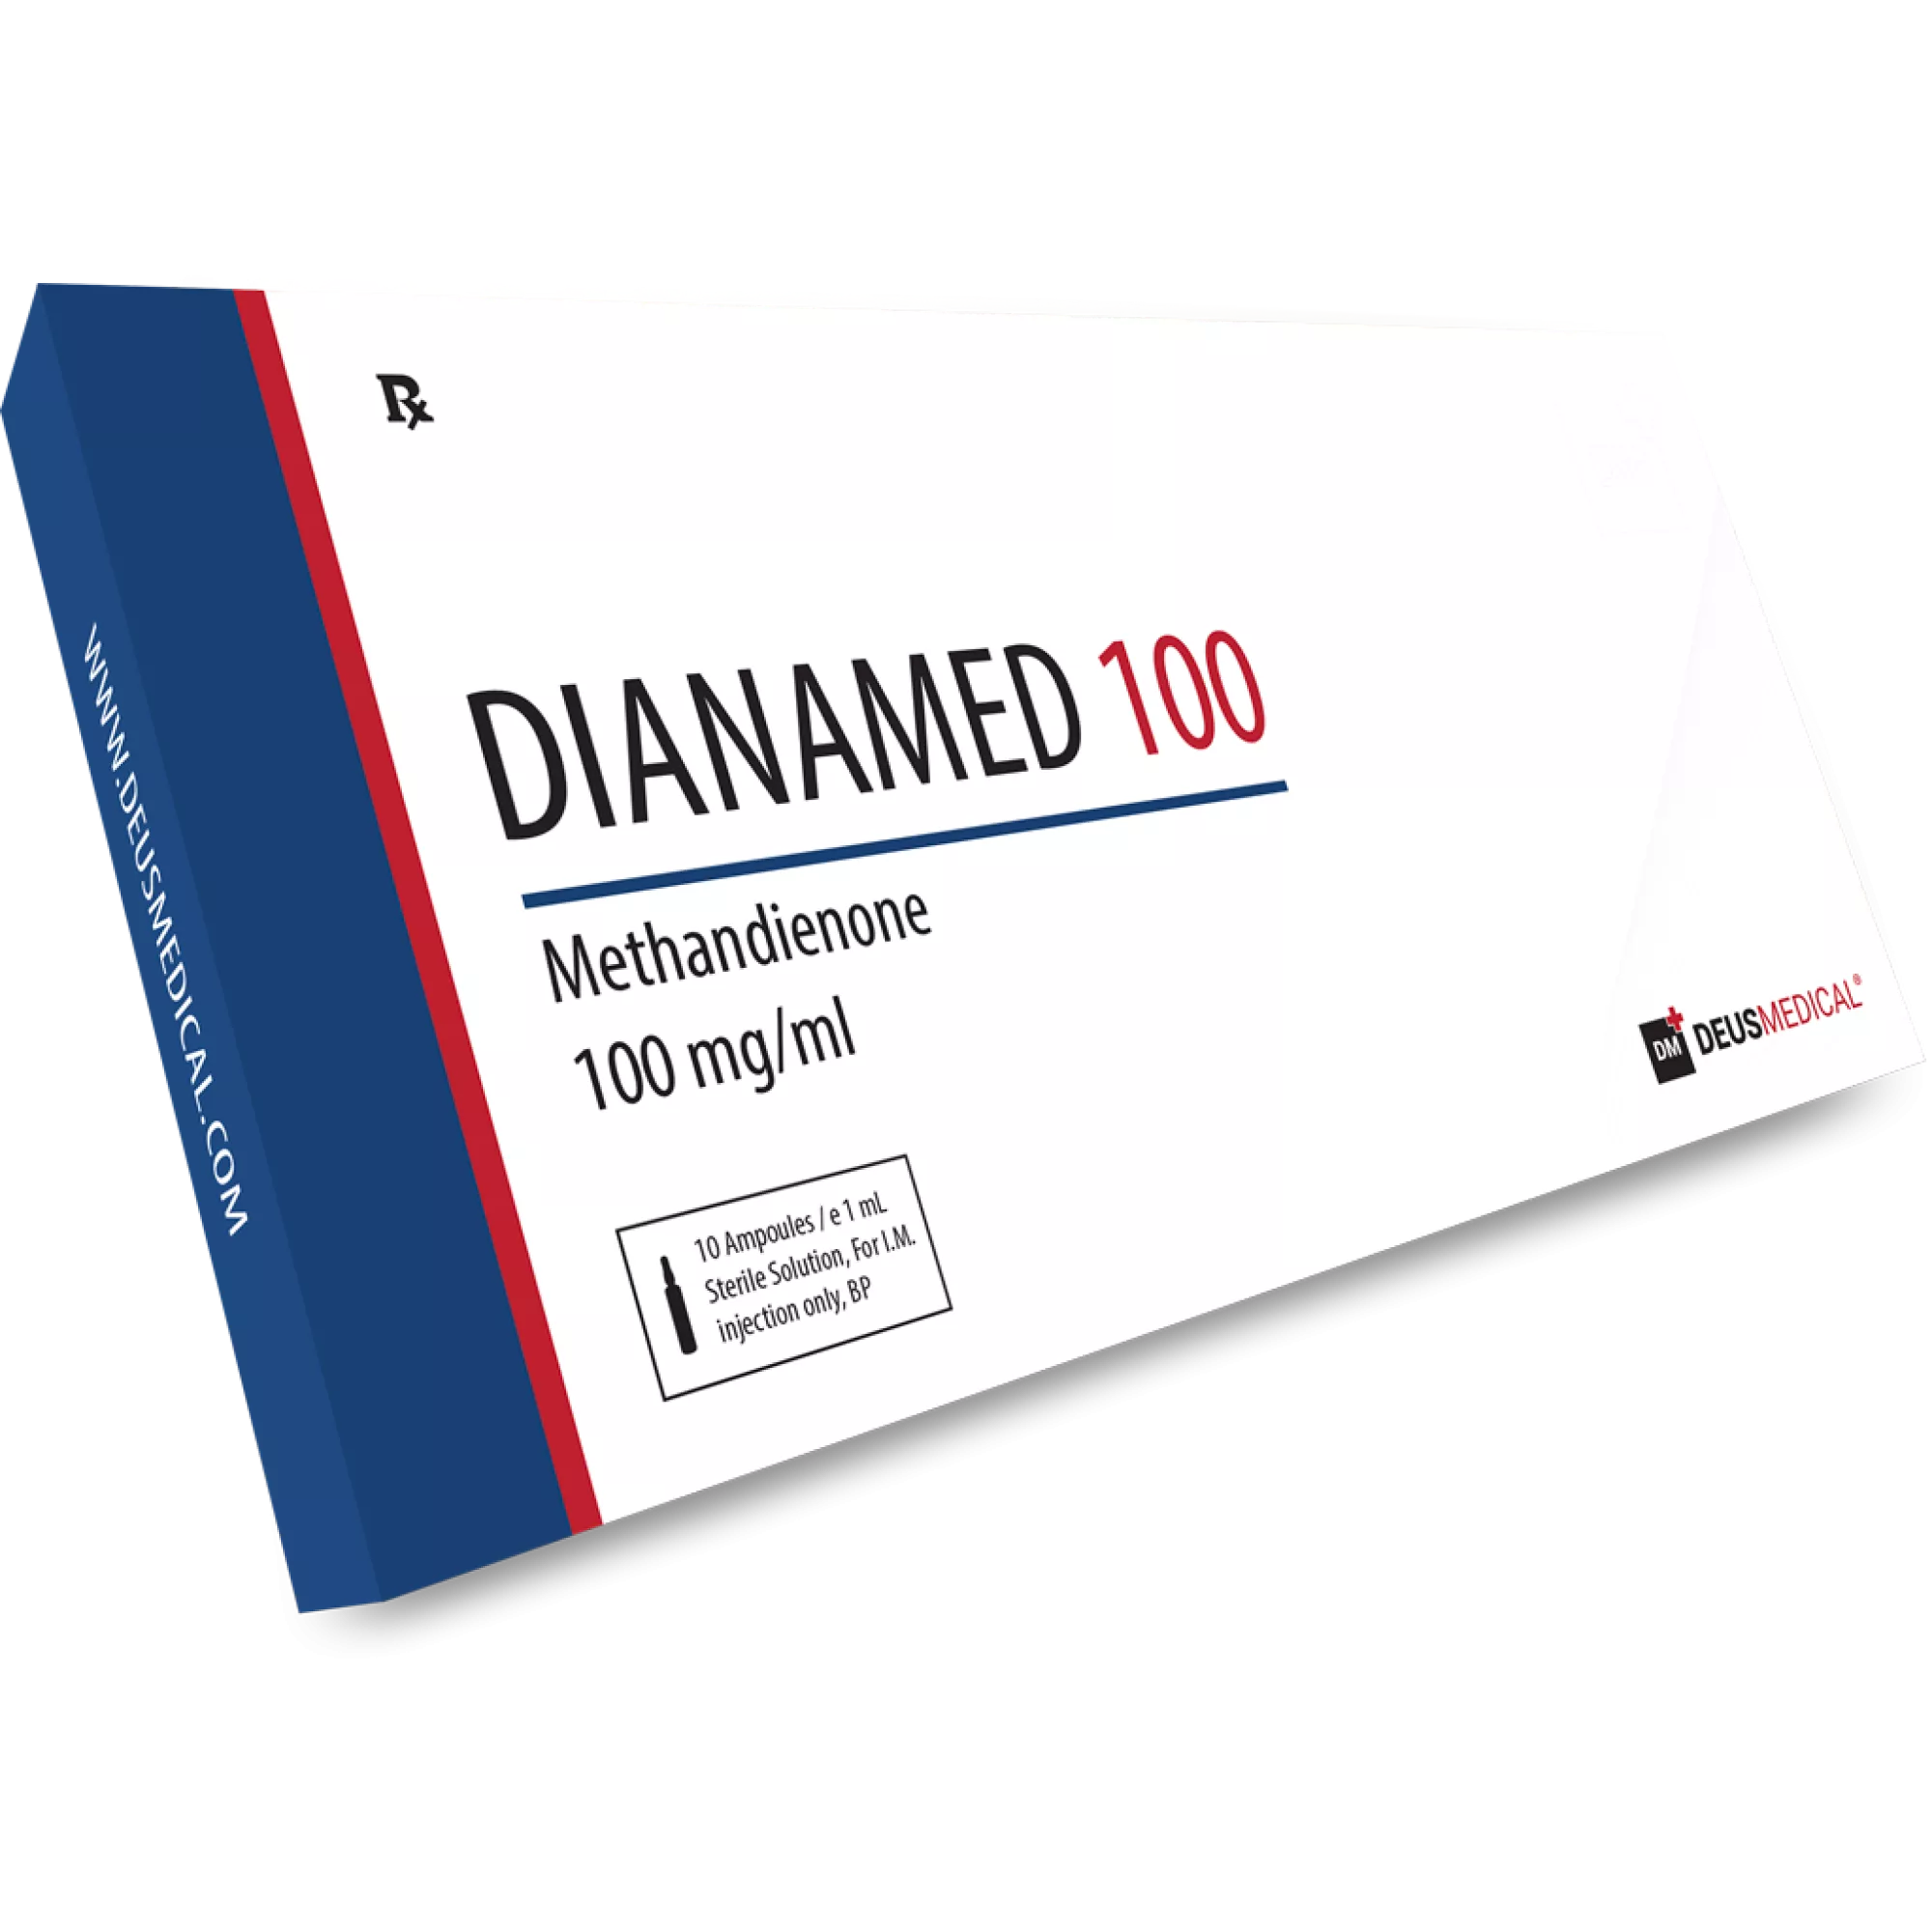 DIANAMED 100 (Methandienone), Deus Medical, Buy Steroids Online - www.deuspower.shop